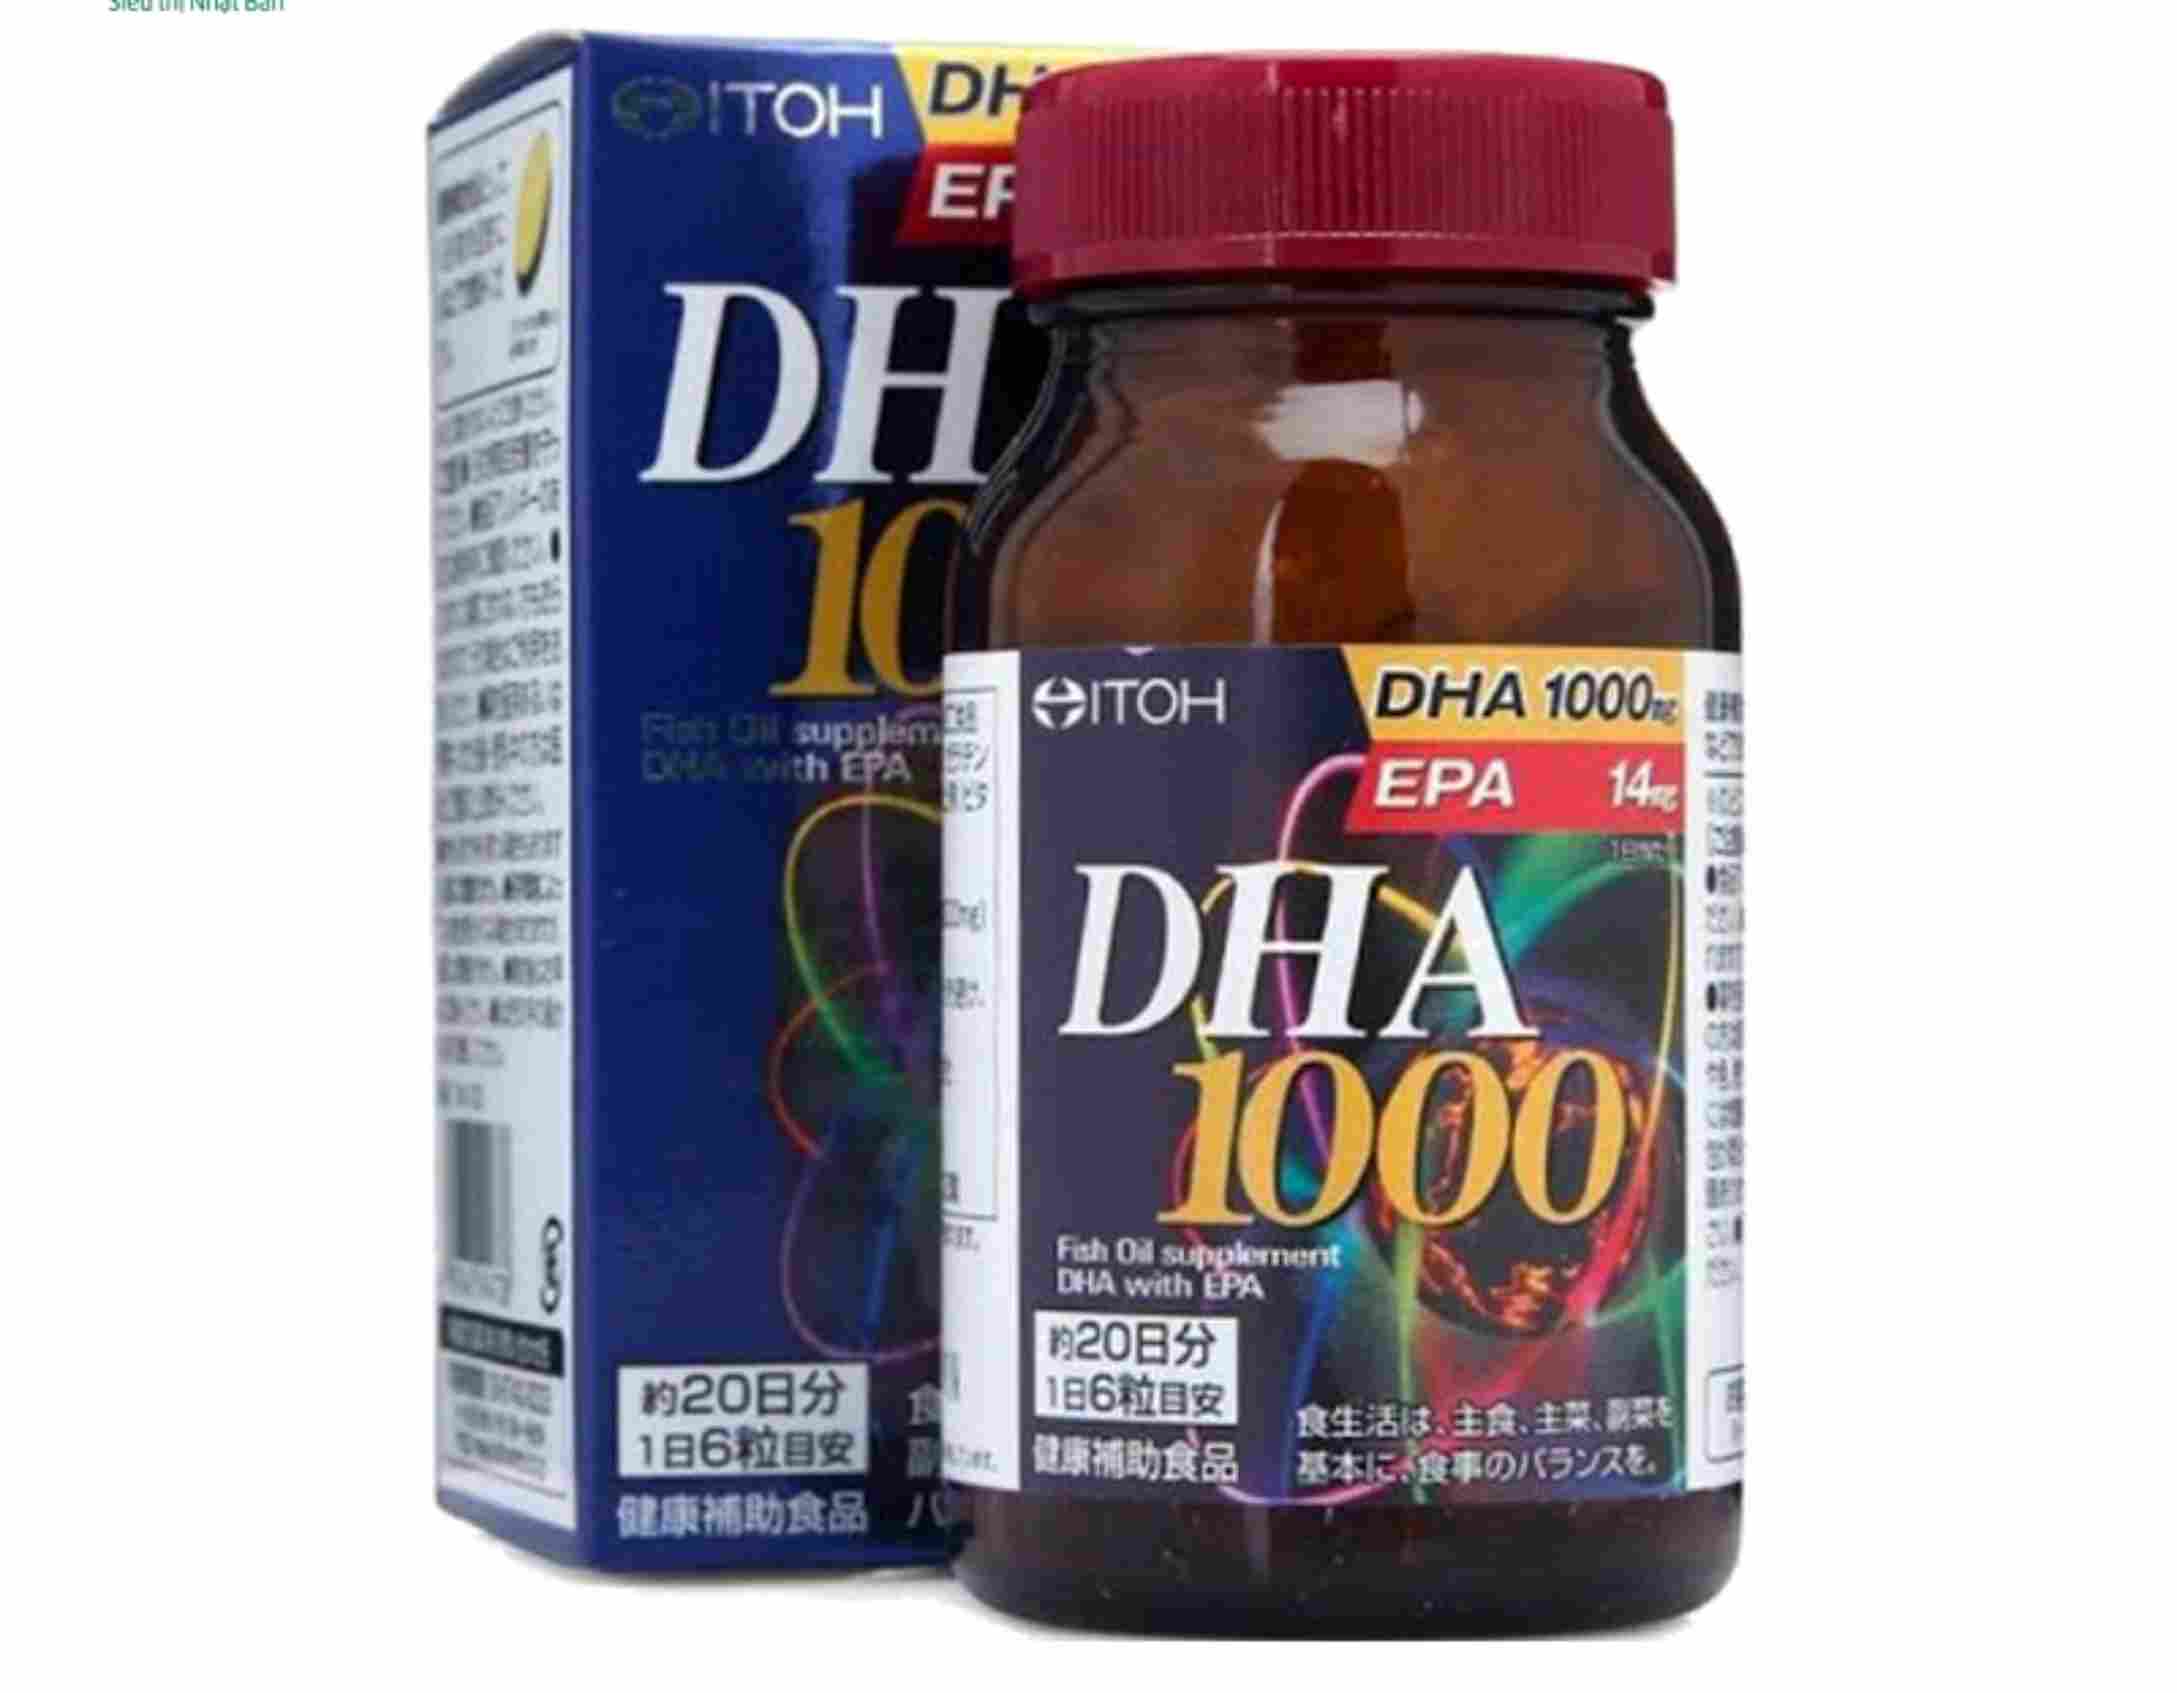 Viên uống Itoh DHA 1000s của Nhật có chất lượng rất tốt, có thể dùng cho trẻ em